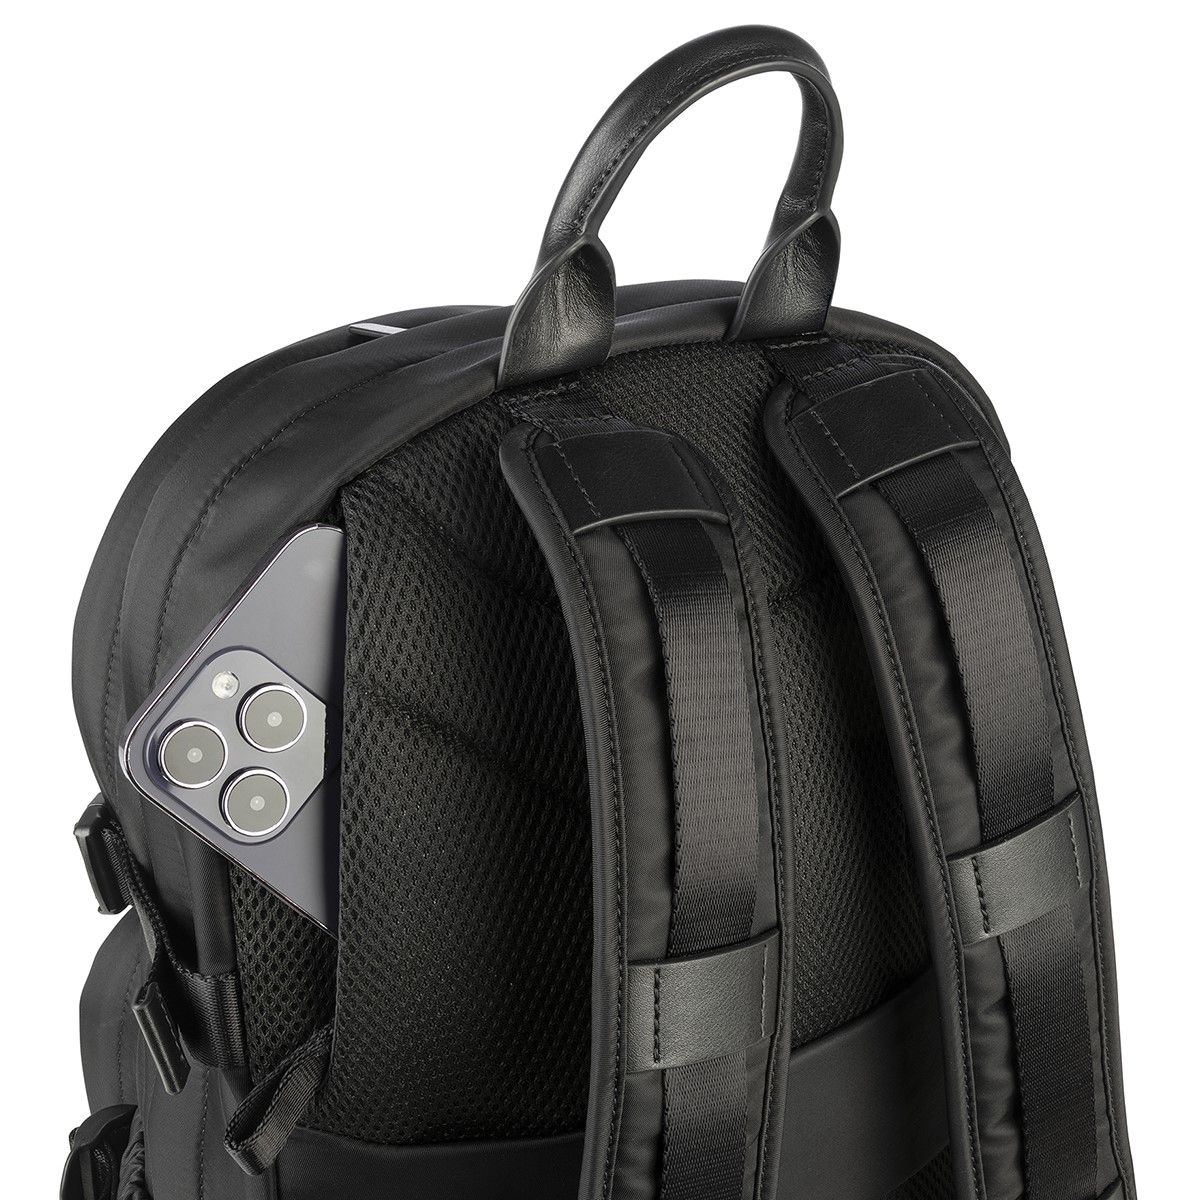 Tucano Backpack Desert-Premium Black